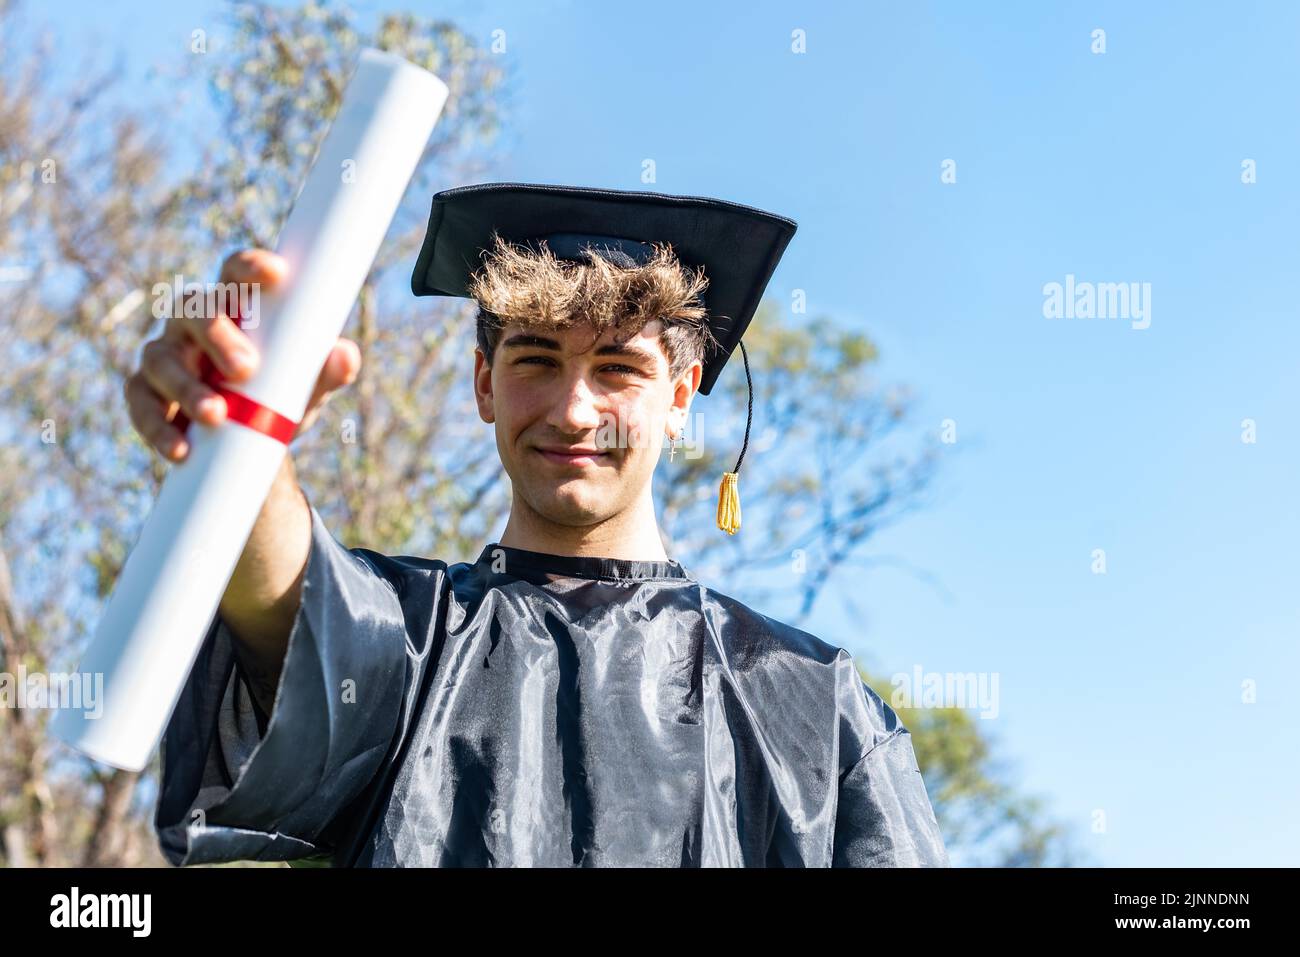 Heureux diplômé jeune homme portant une robe de baccalauréat et un mortarboard noir et montrant son diplôme Banque D'Images